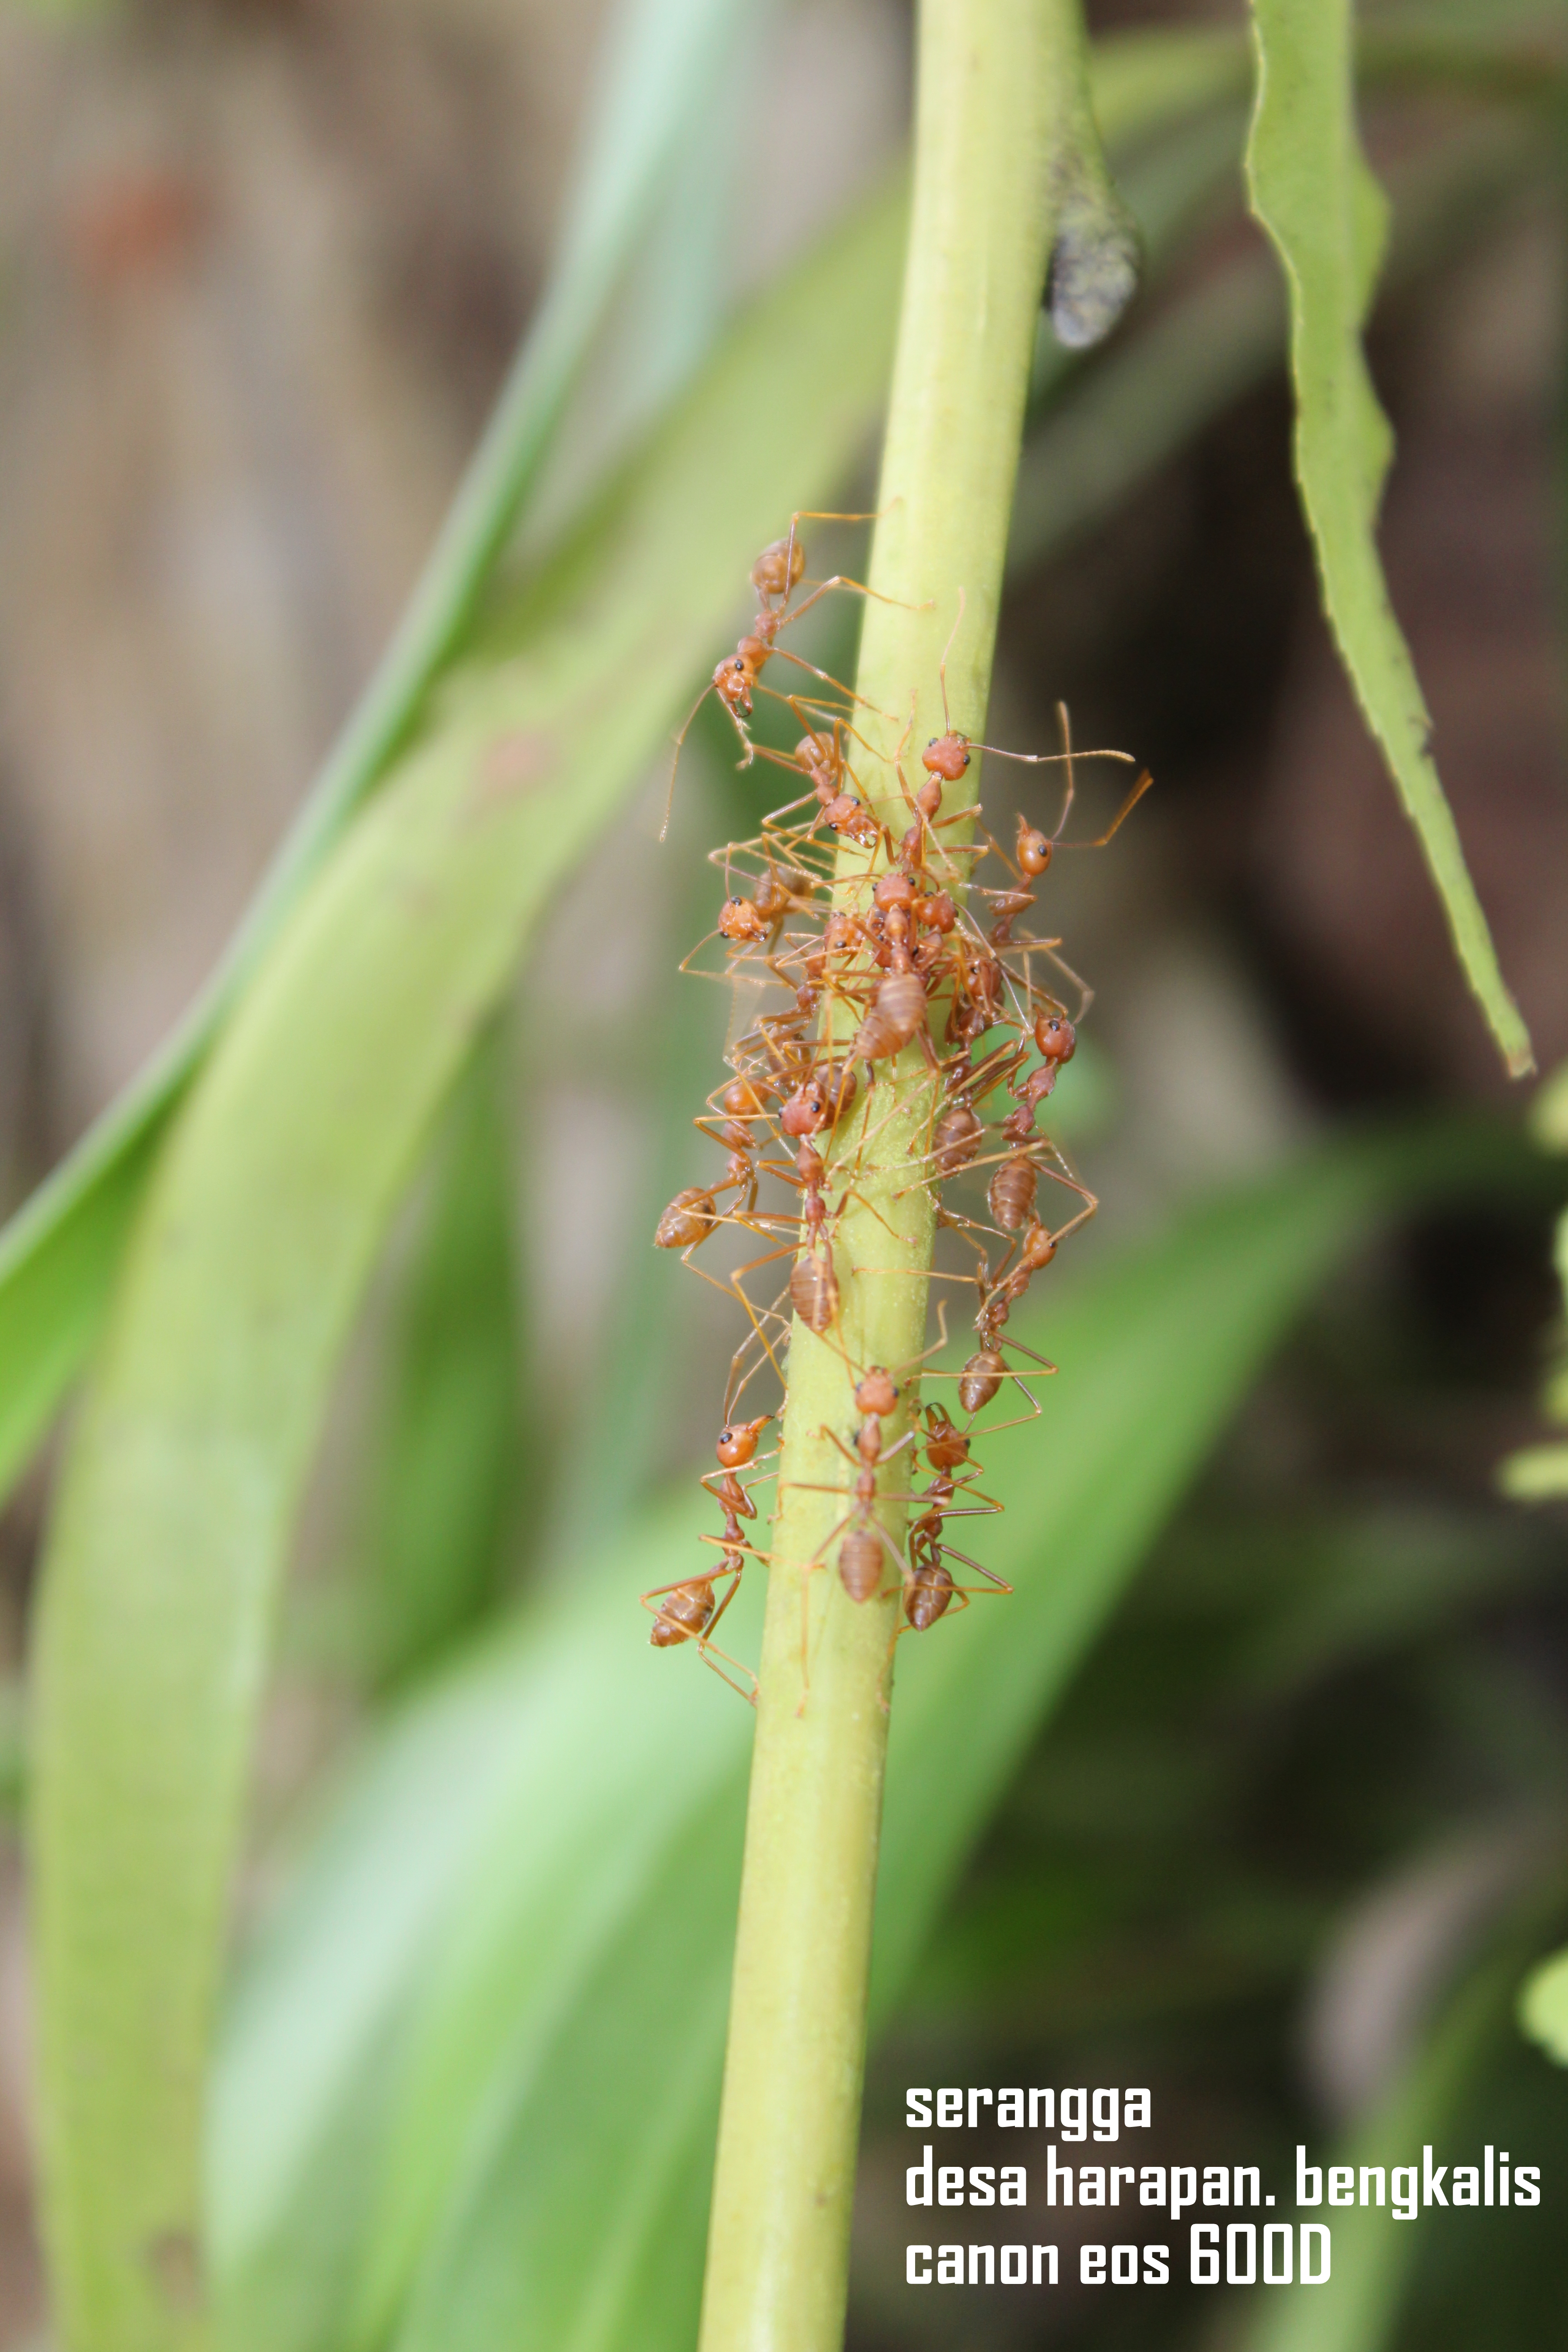 (Semut) Rangrang atau karanggo (Oecophylla)